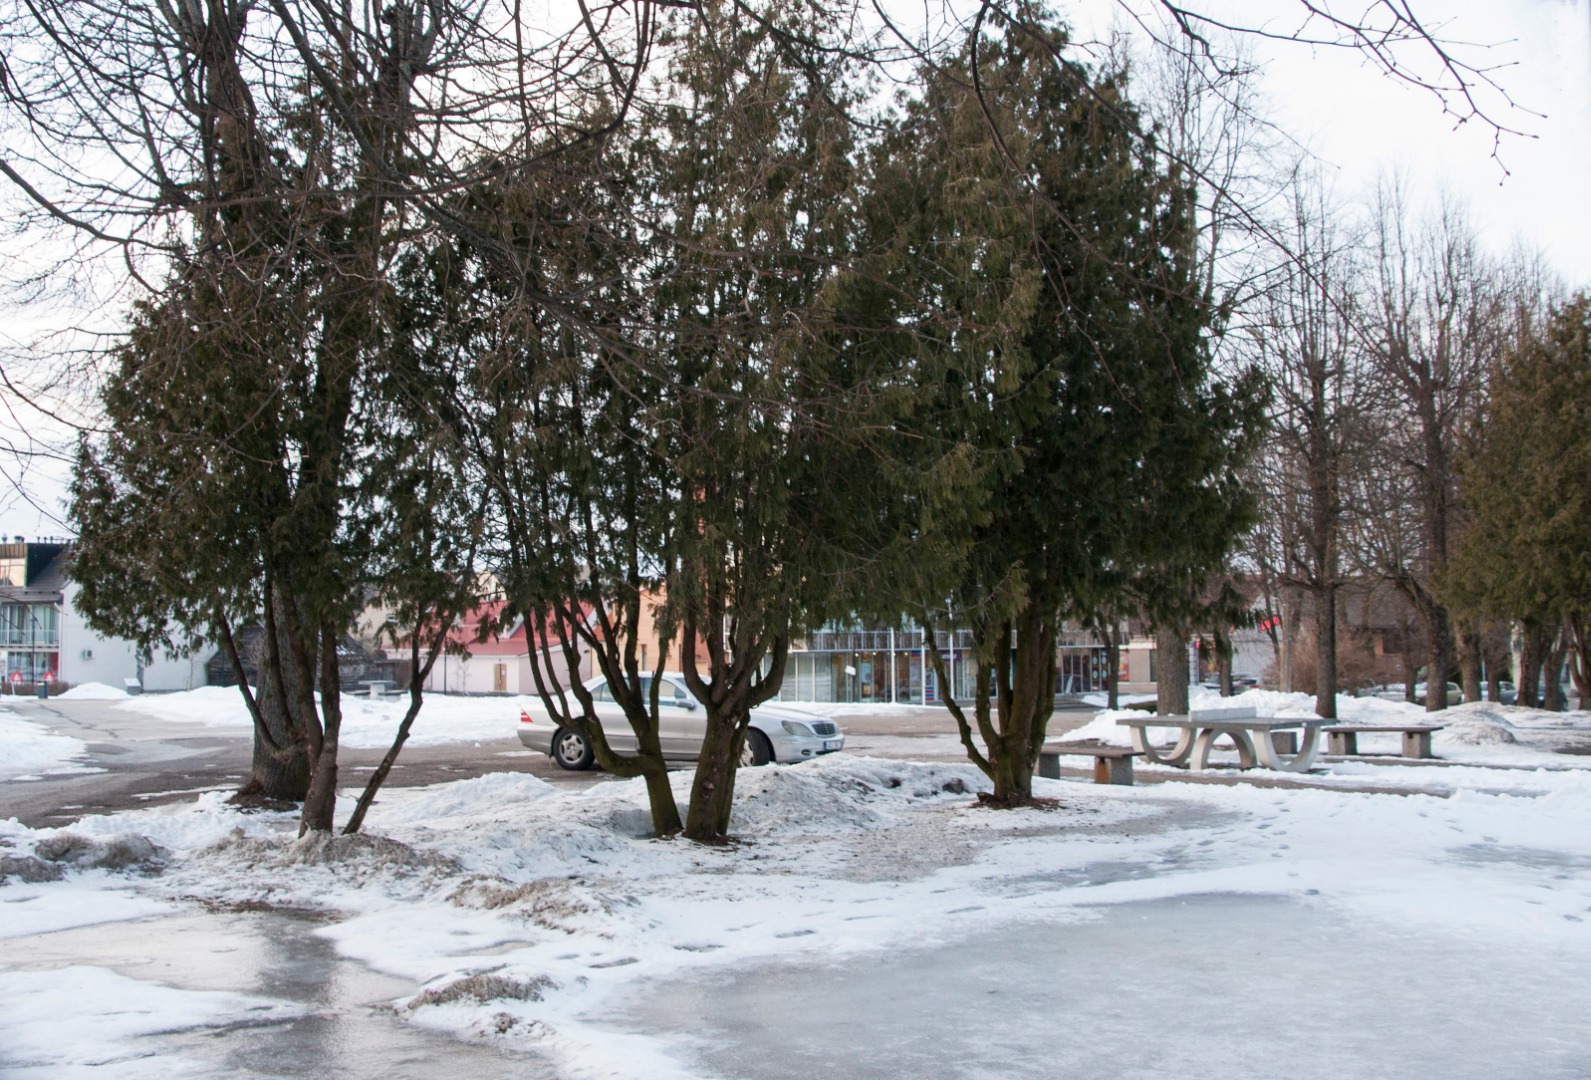 foto Viljandi, Lossi tn 21, kino Rubiin 1966 talv F A. Kiisla (lammutus 2011) rephoto